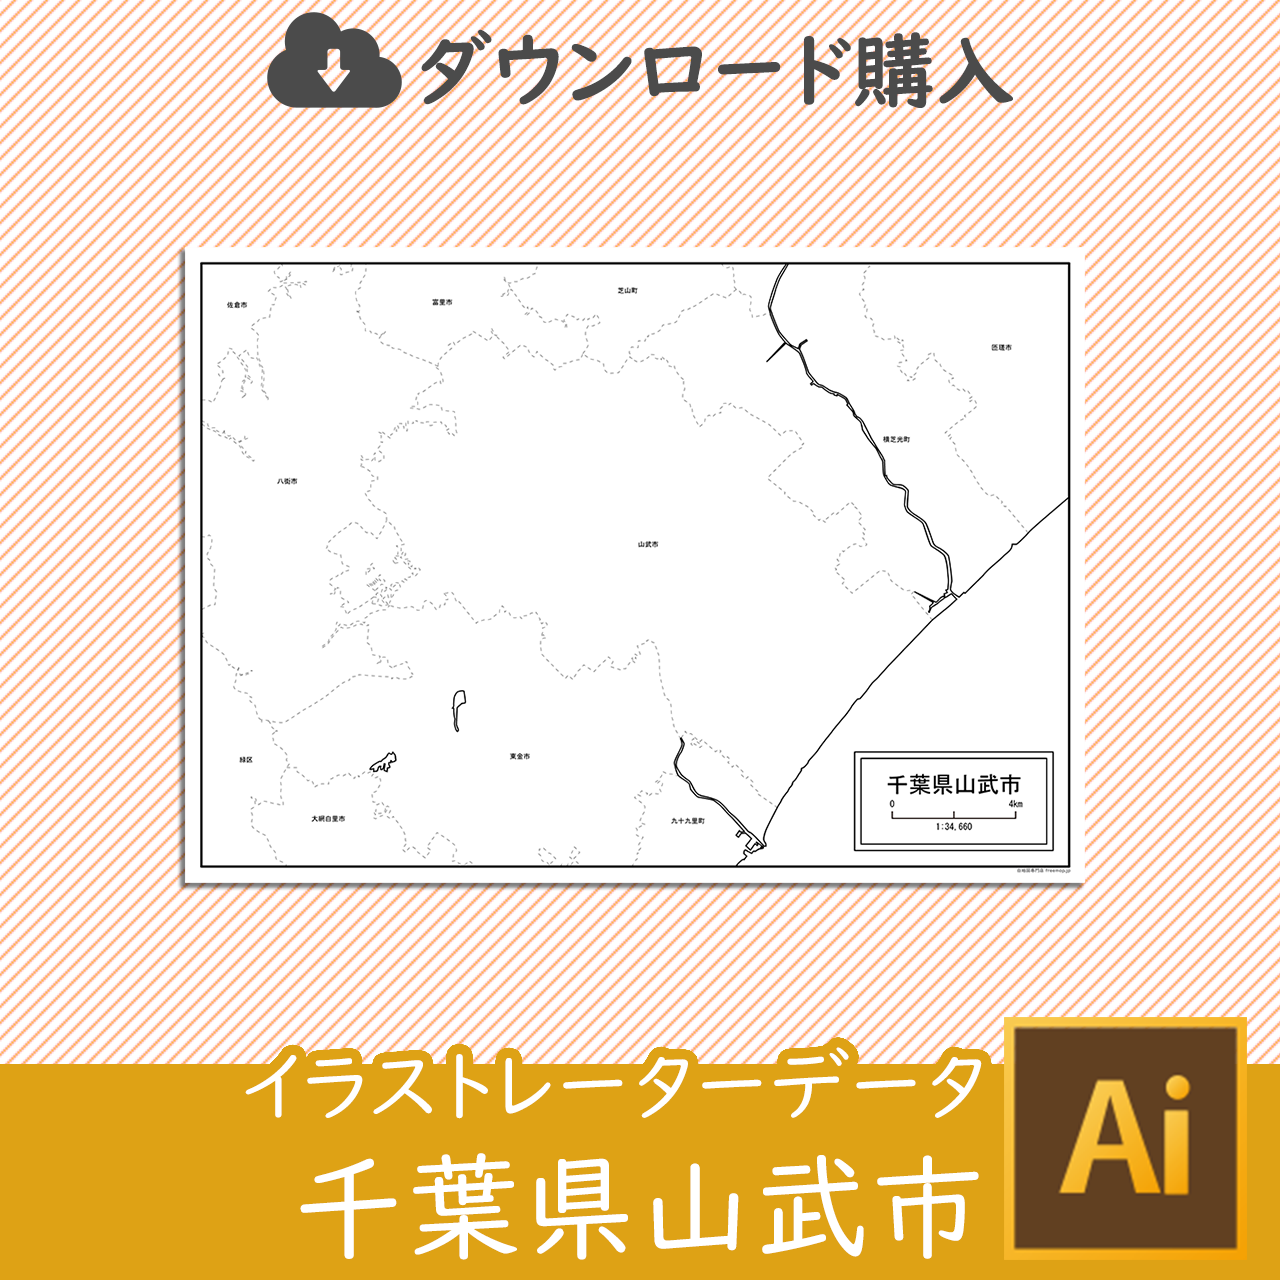 山武市のaiデータのサムネイル画像